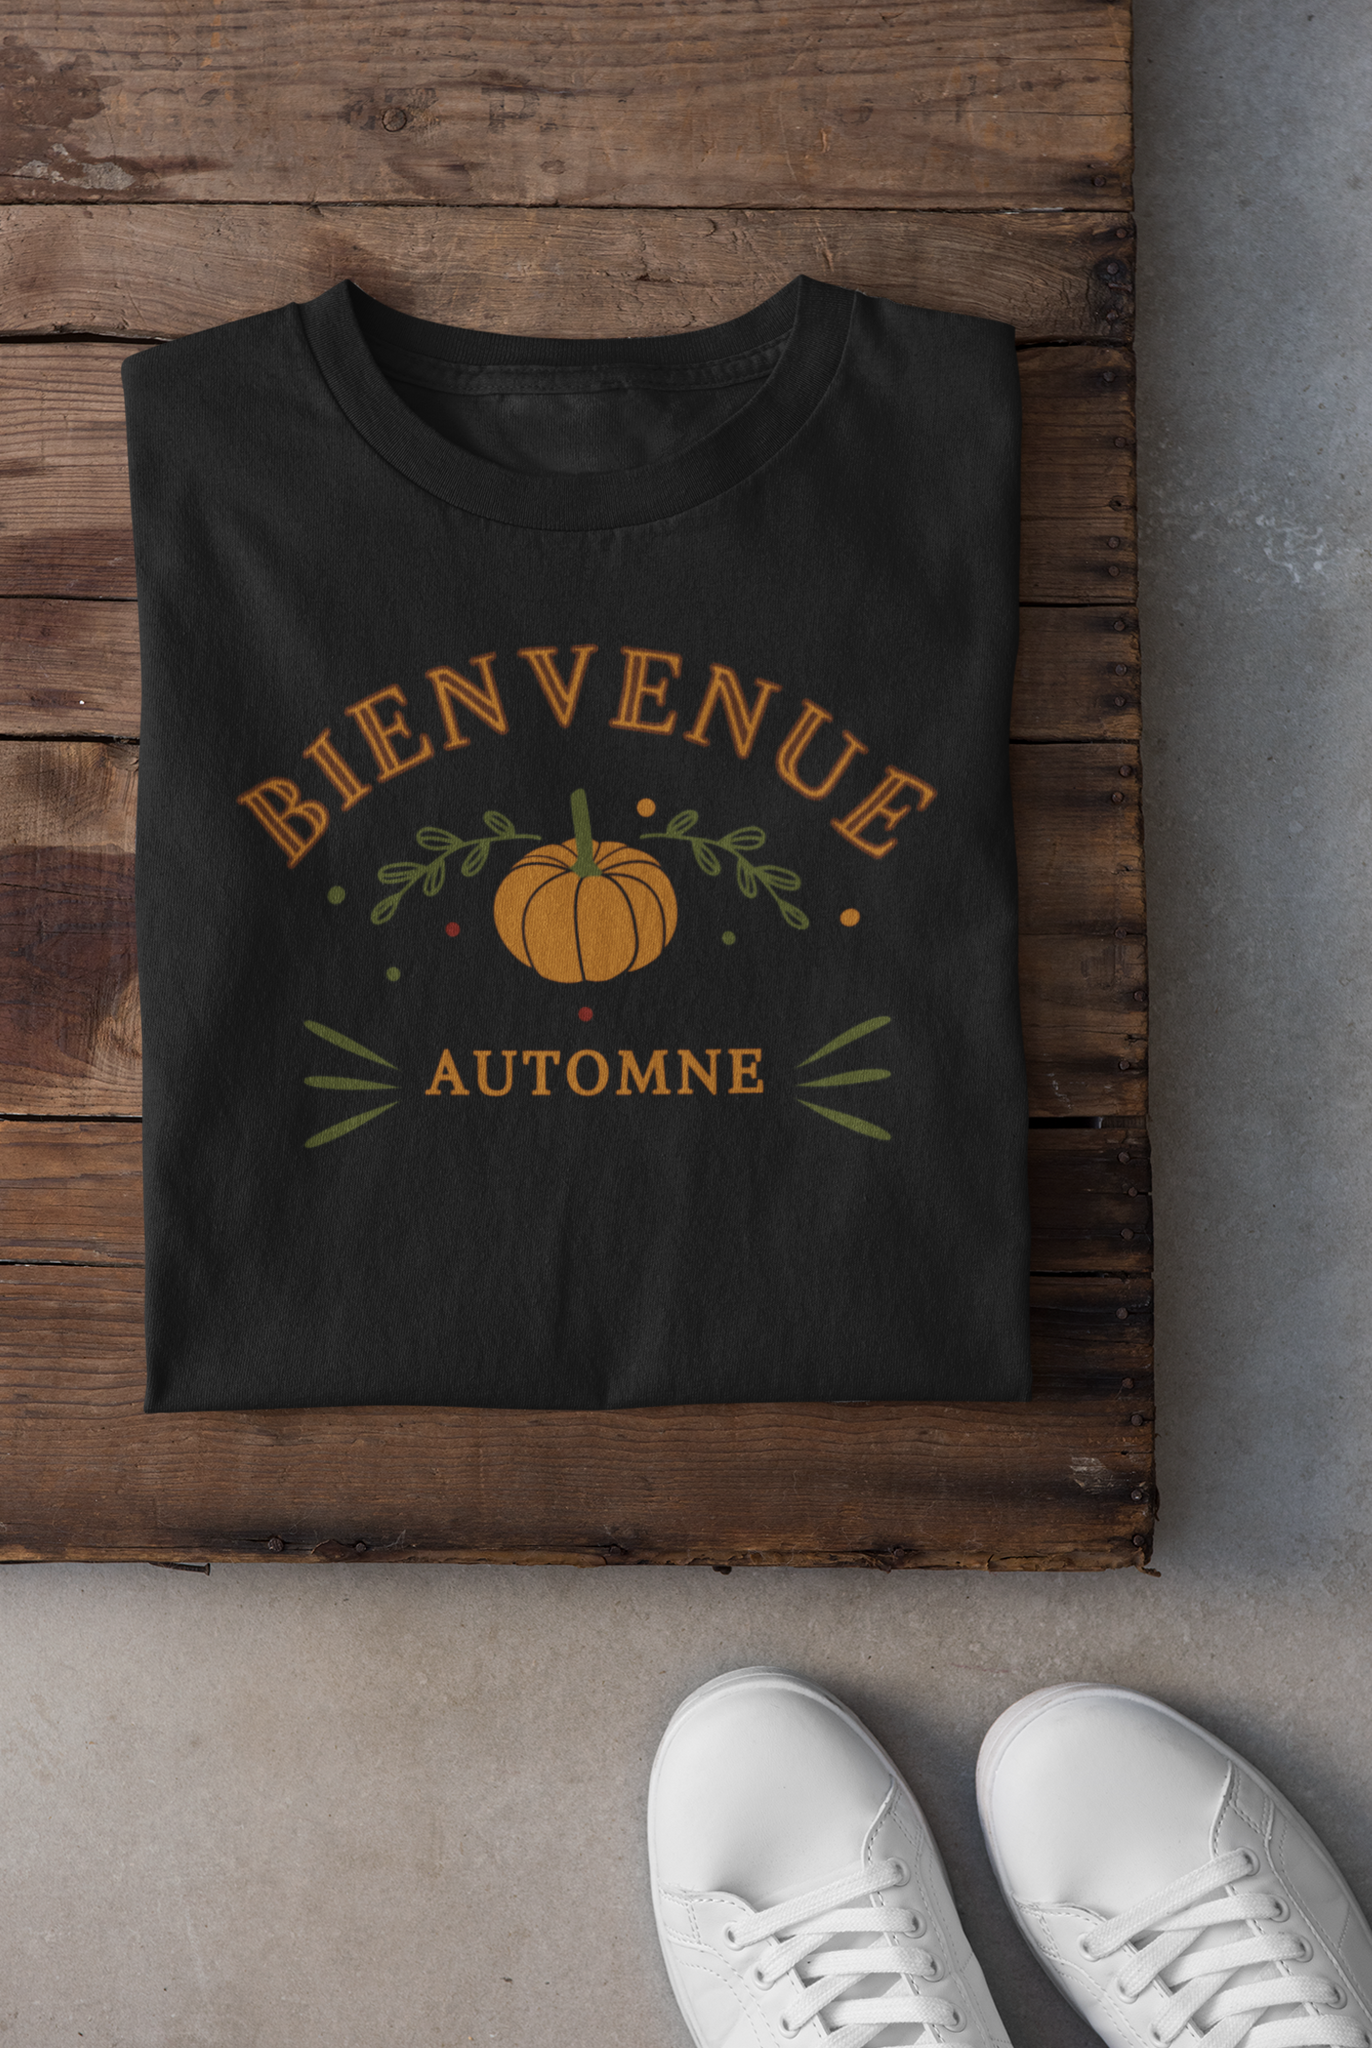 T-shirt - Bienvenue automne